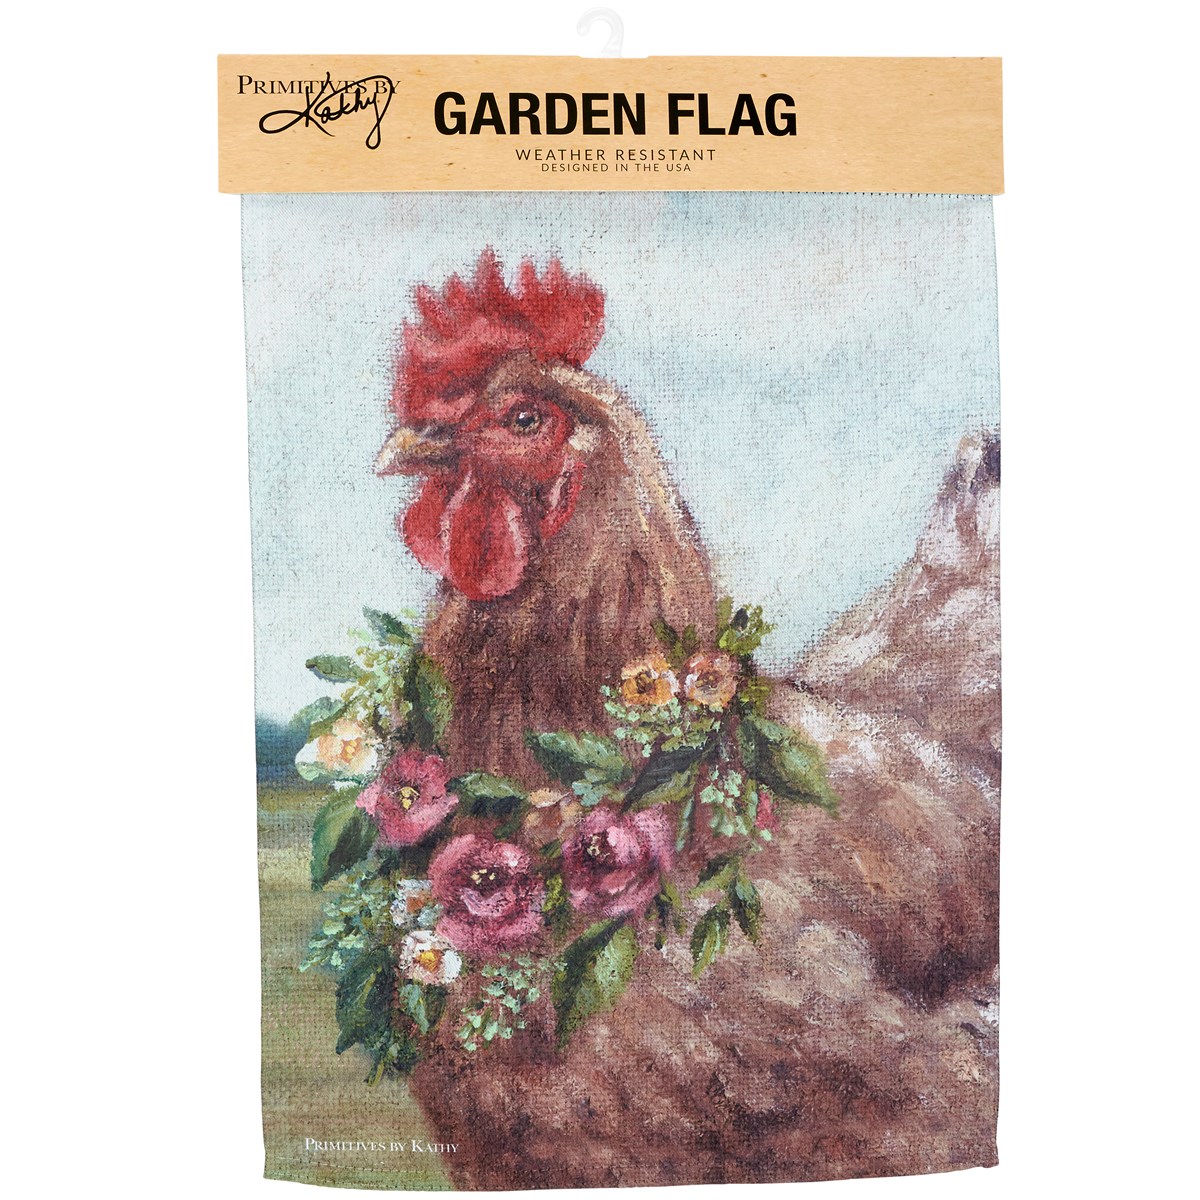 Floral Chicken Garden Flag - Polyester